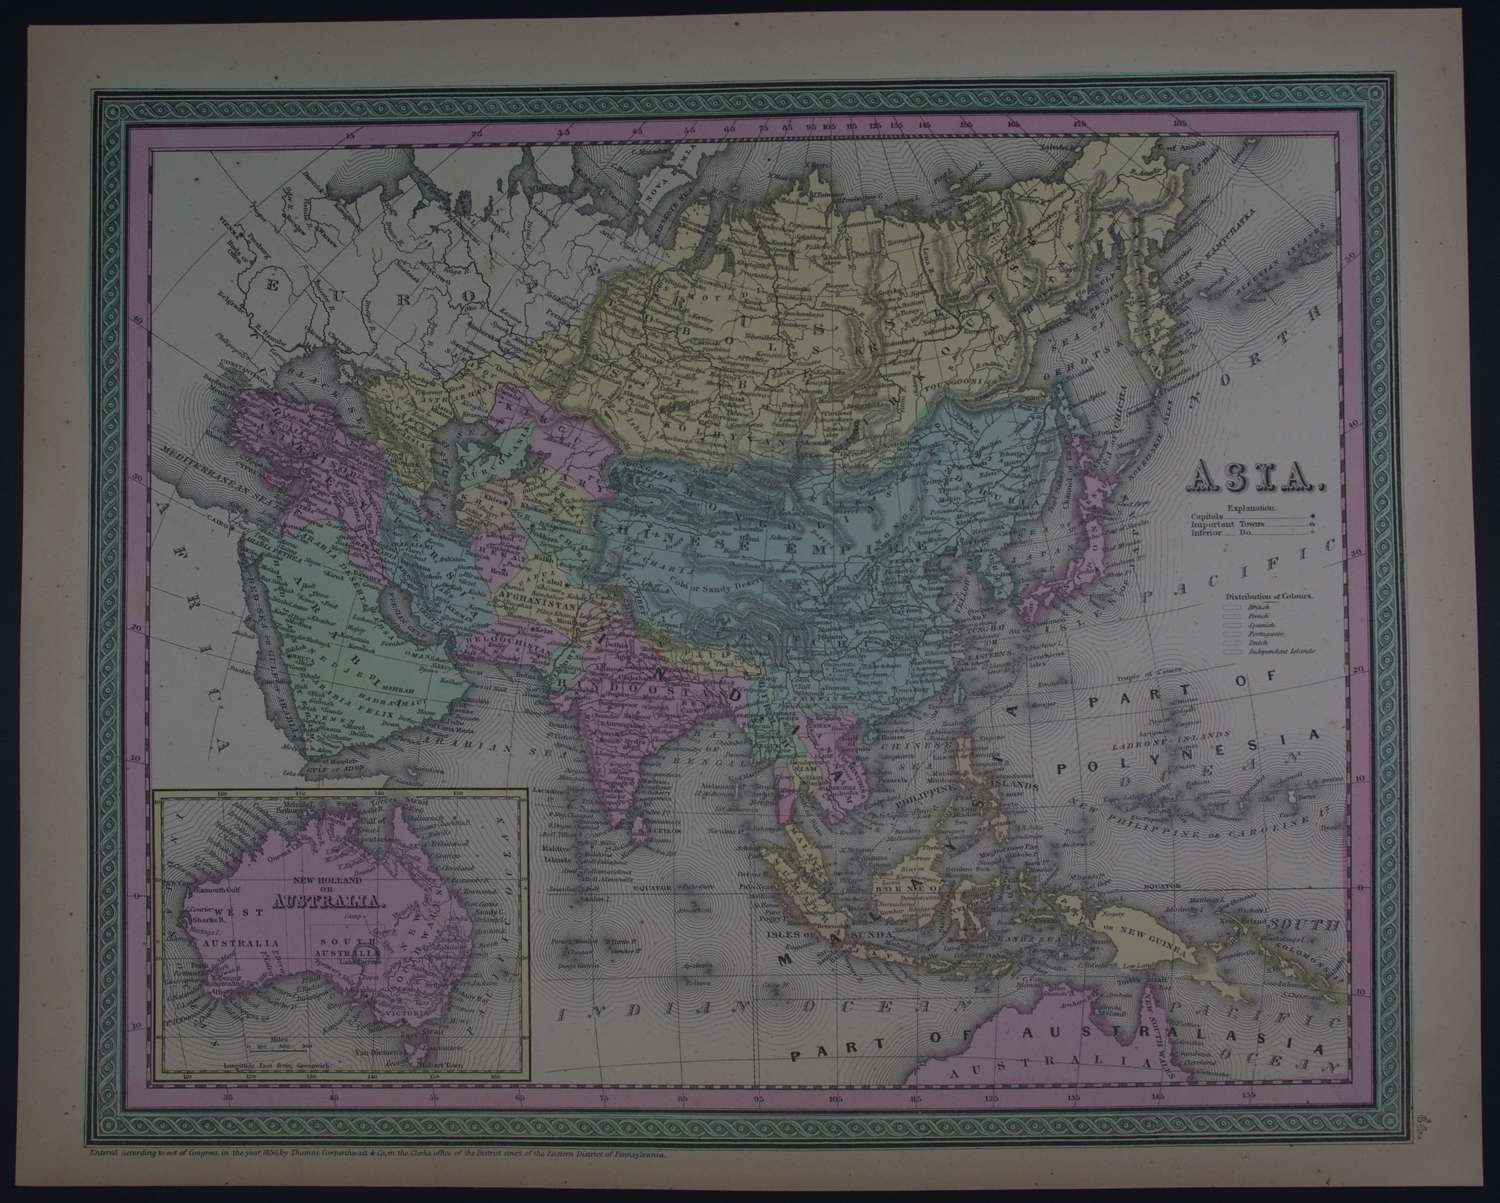 Asia by Thomas, Cowperthwait & Co